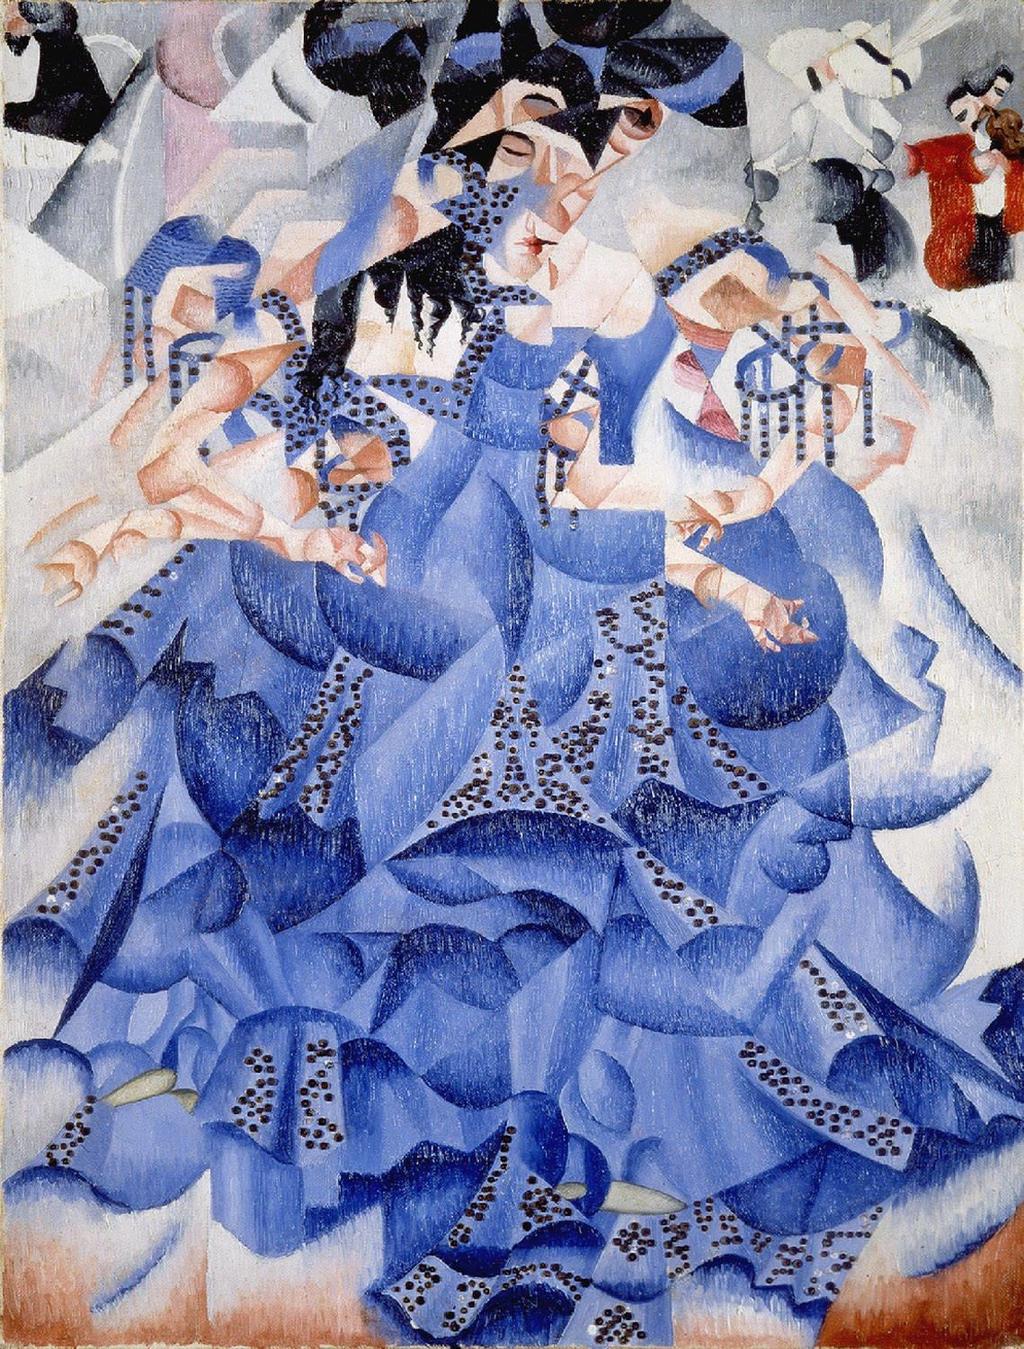 지노세베리니 푸른무희 (1912) 캔버스에유채및장식용금속 64 61 cm, 밀라노, 지아니마티올리컬렉션